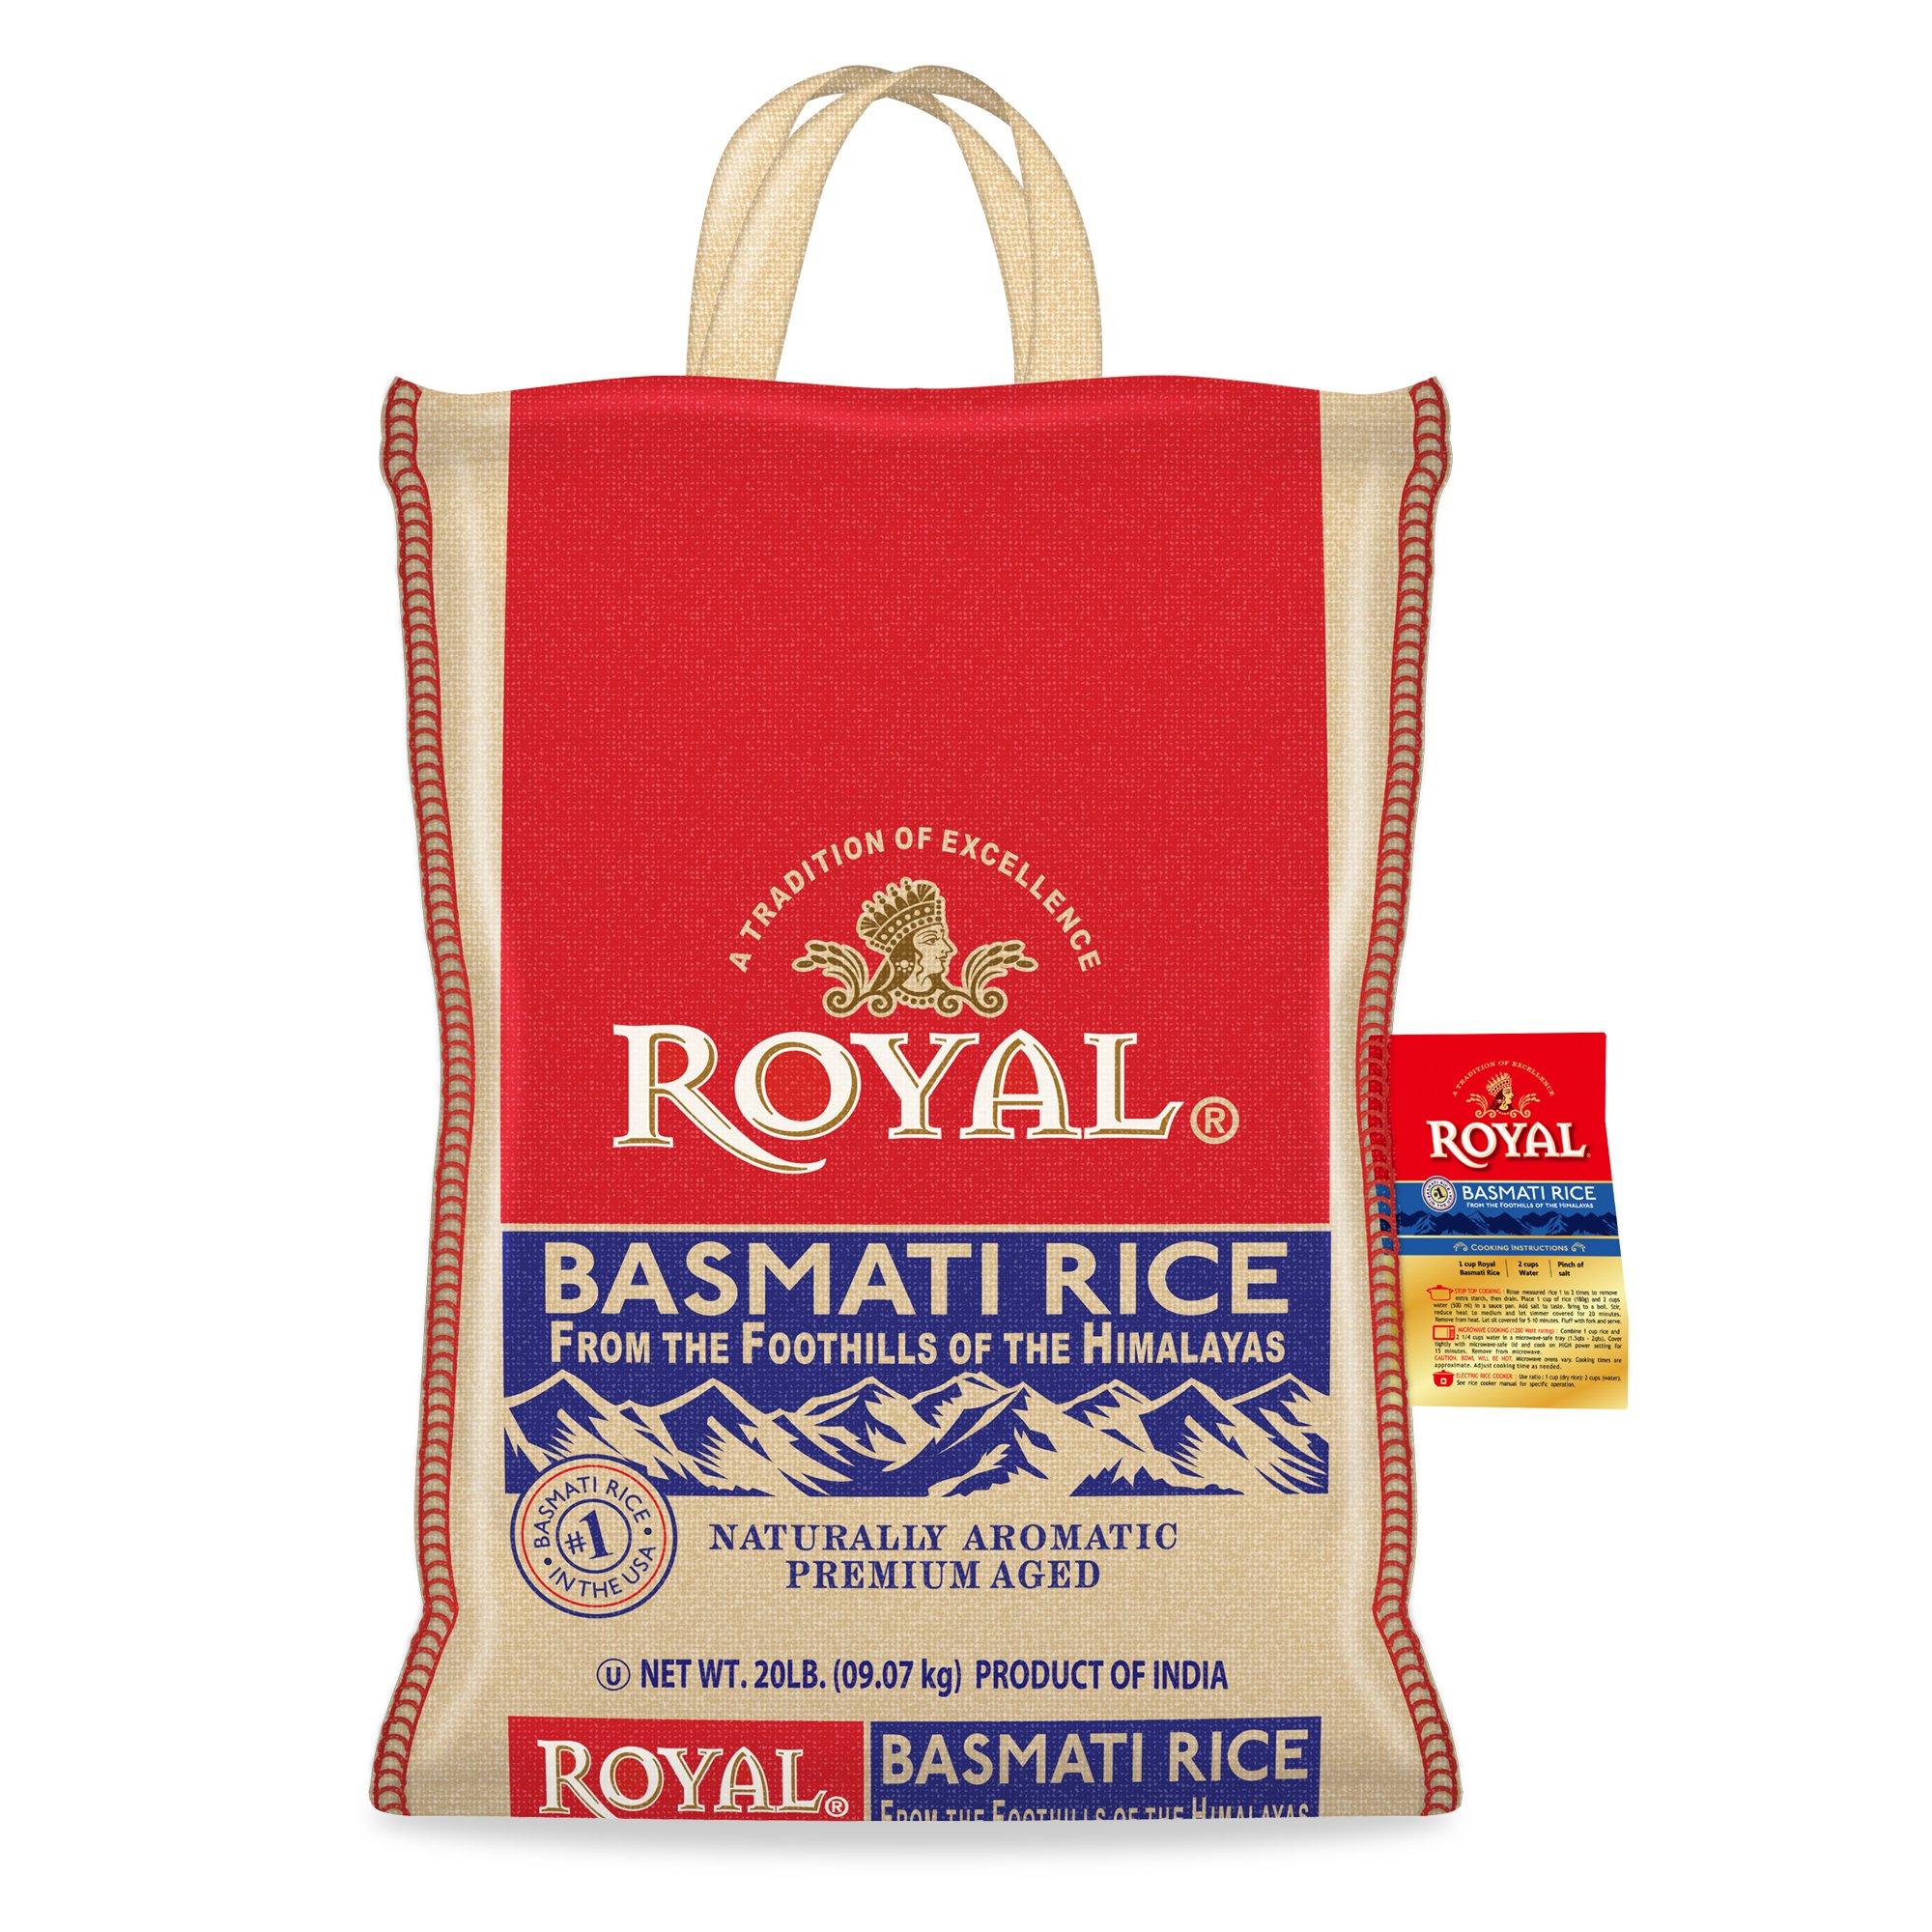 Royal White Basmati Rice 20lbs Bag for $20.76